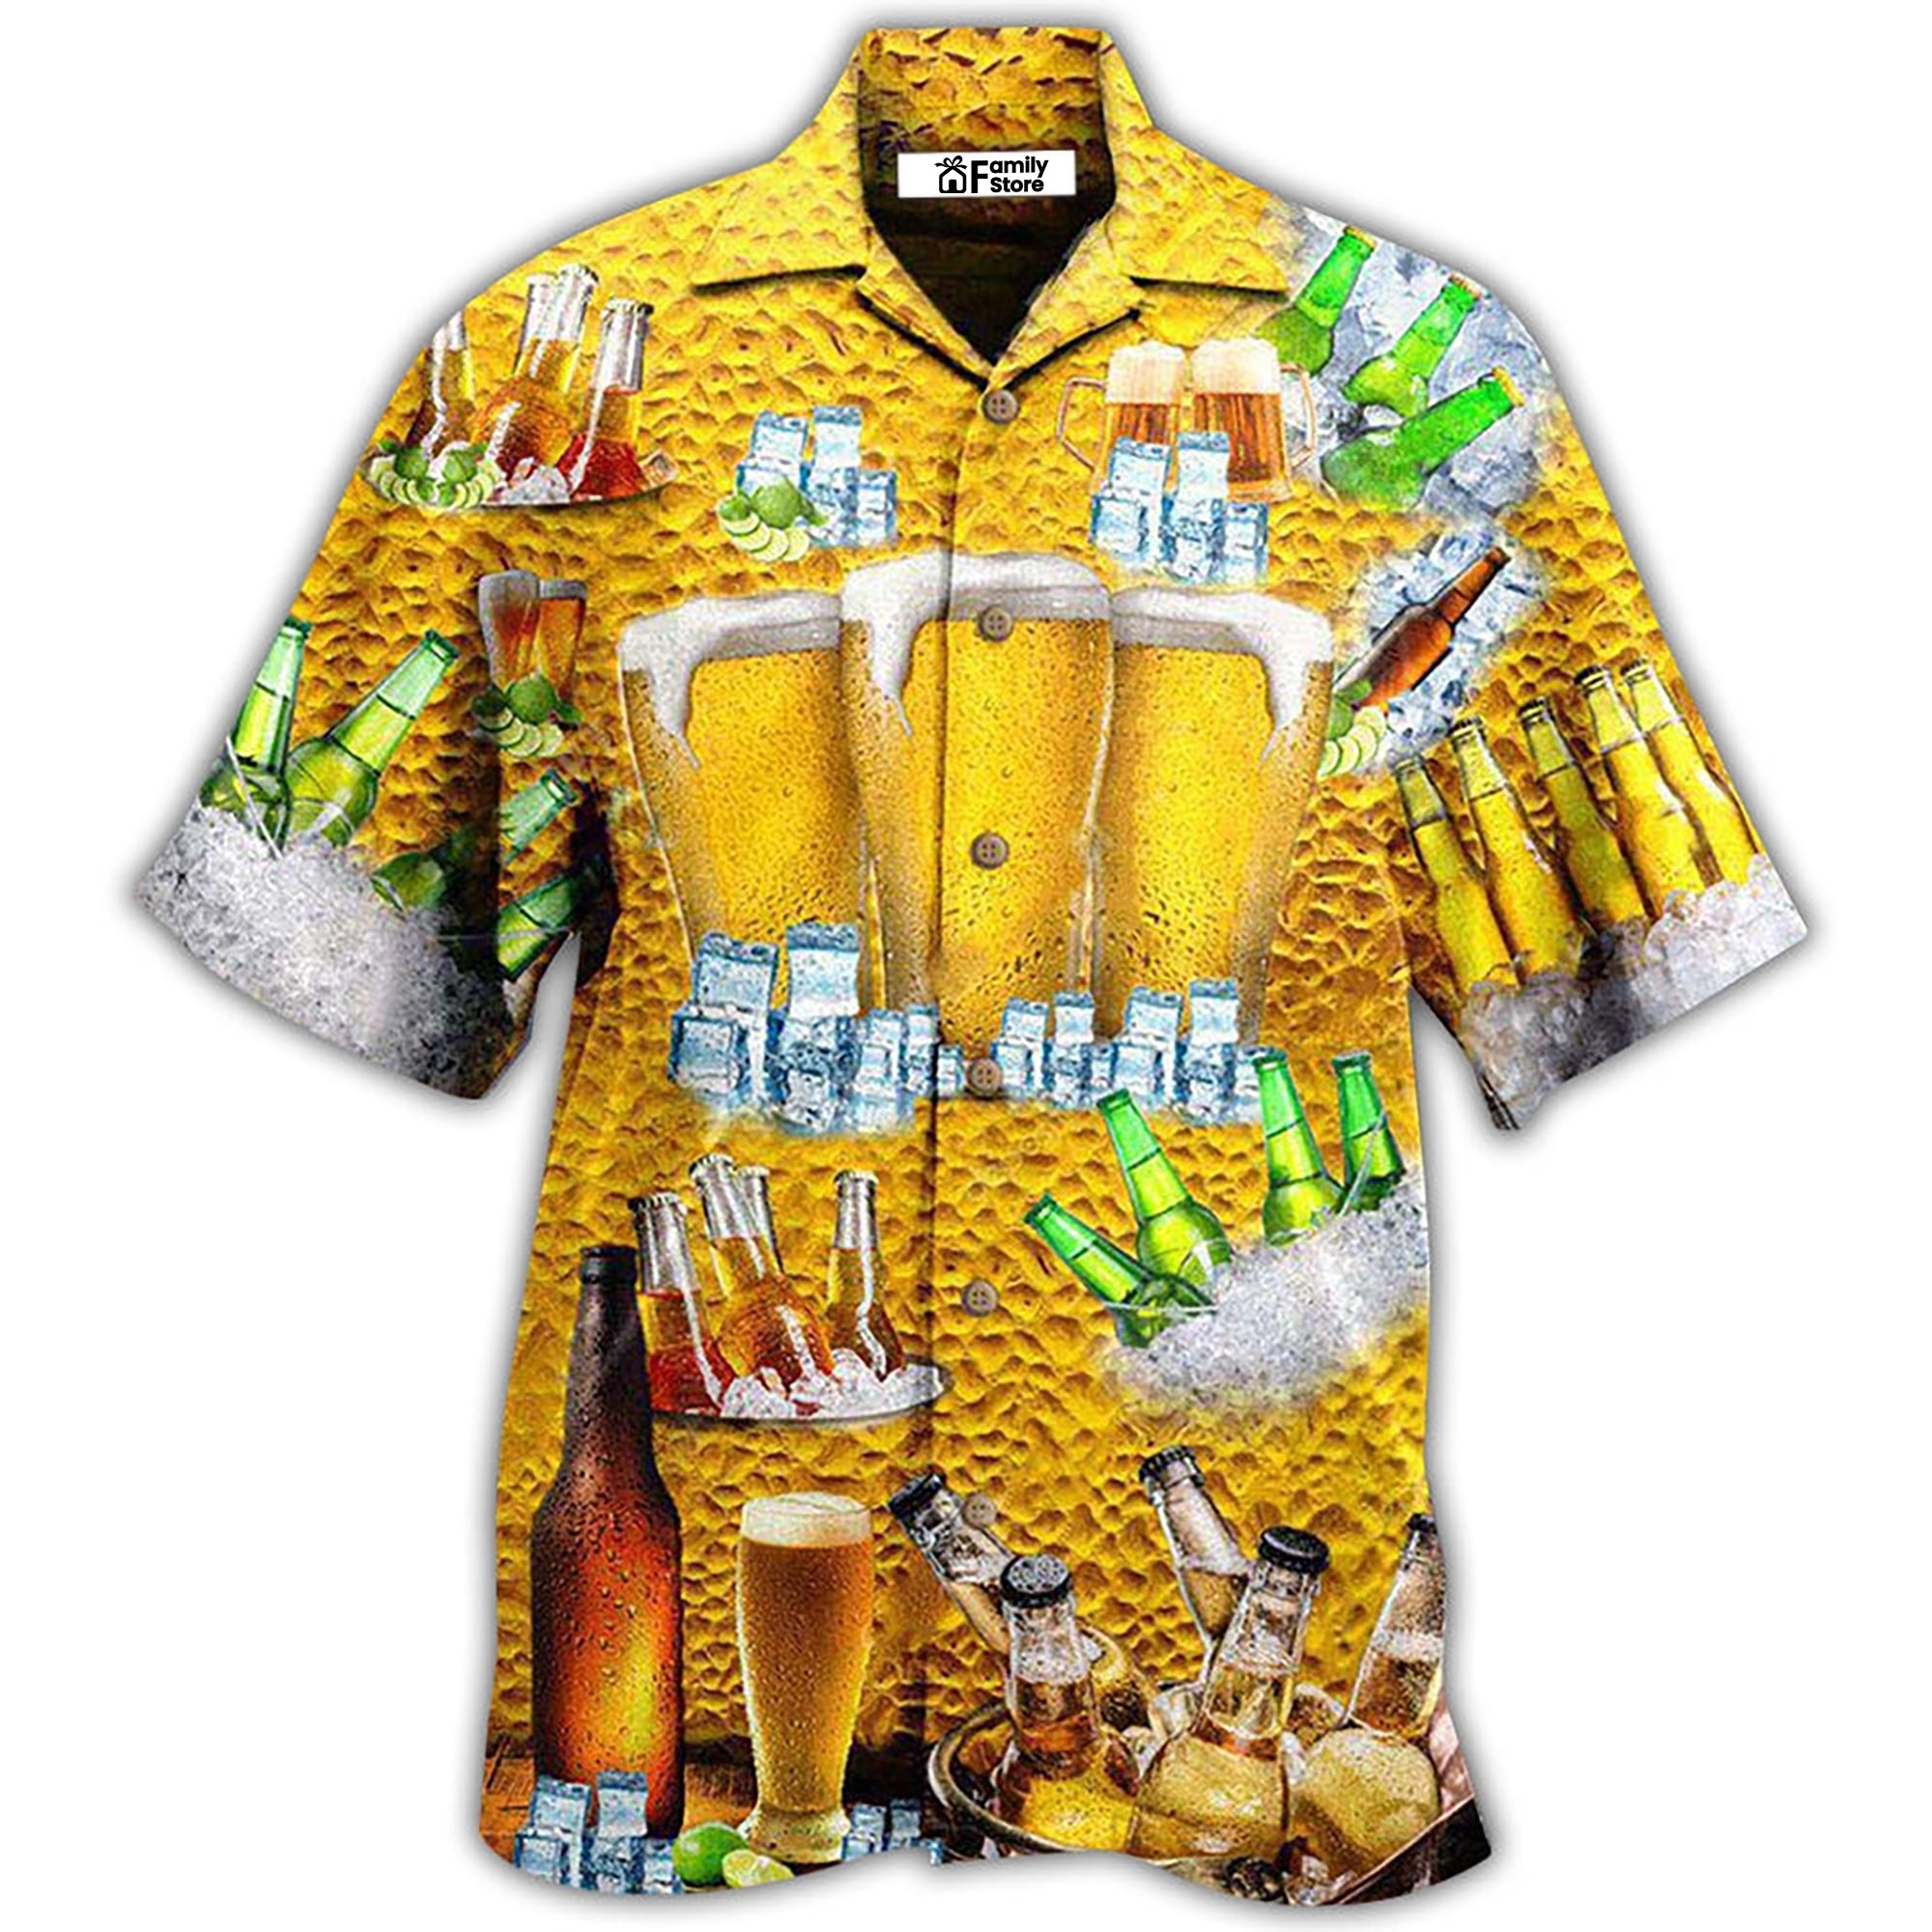 Beer Is BrewTiful - Hawaiian Shirt